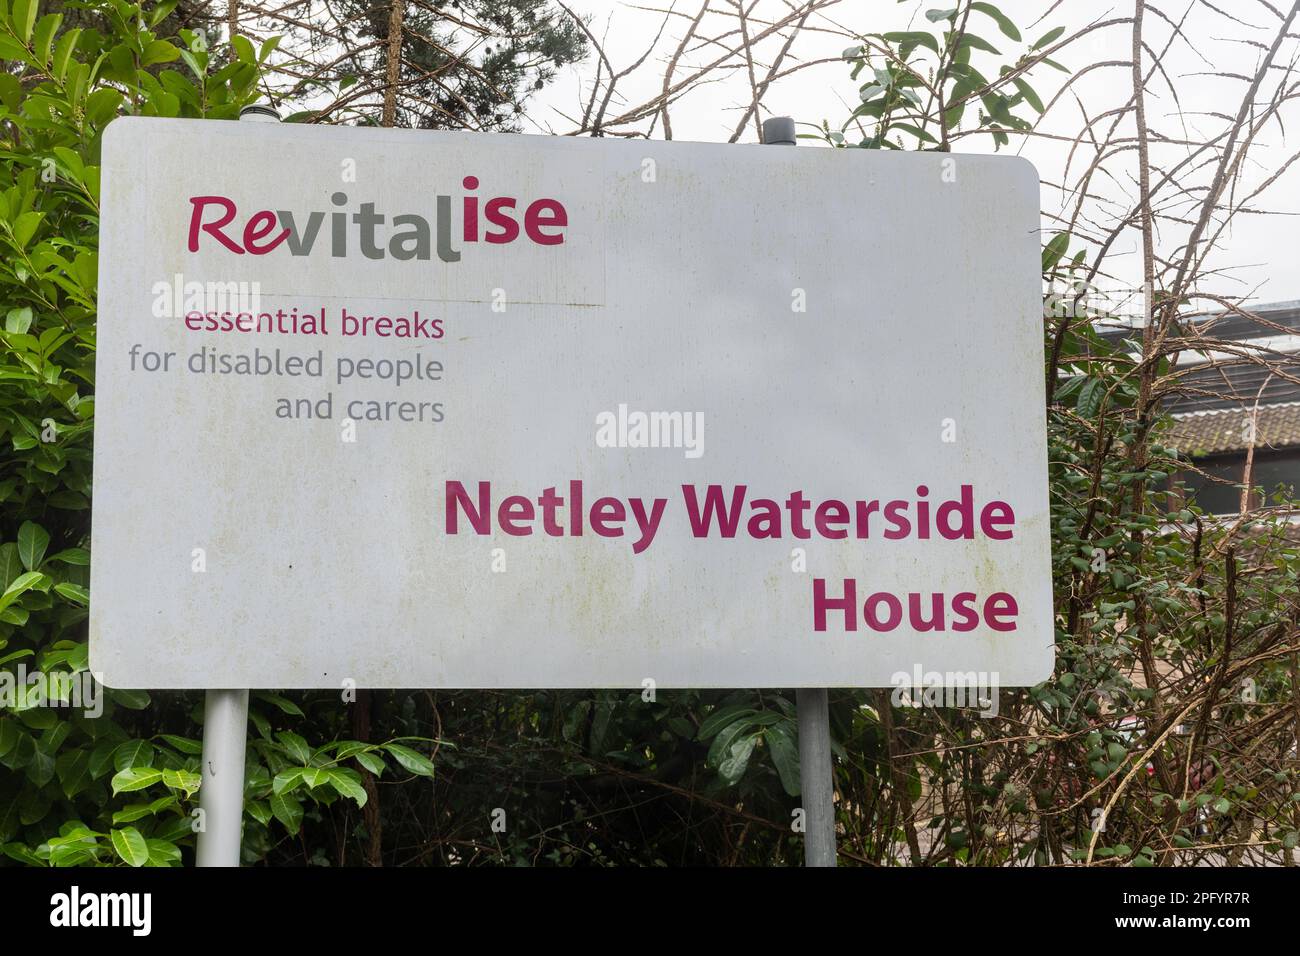 Revitaliser Netley Waterside House, une maison de soins qui offrait des pauses pour les personnes handicapées et les soignants, Netley, Hampshire, Angleterre, Royaume-Uni, fermé en 2021 Banque D'Images